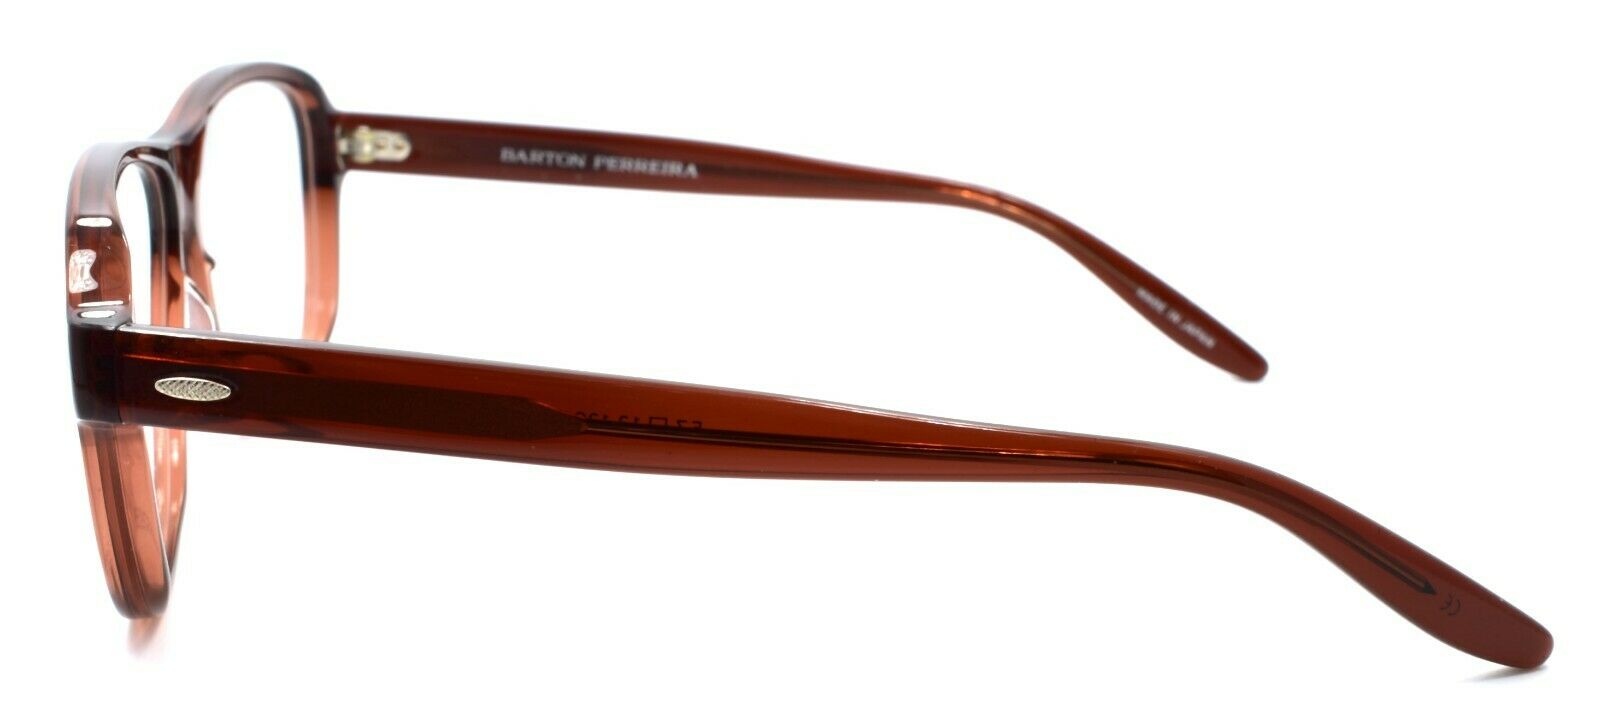 3-Barton Perreira Newmar Unisex Eyeglasses 57-13-138 Sierra Brown JAPAN-672263038955-IKSpecs